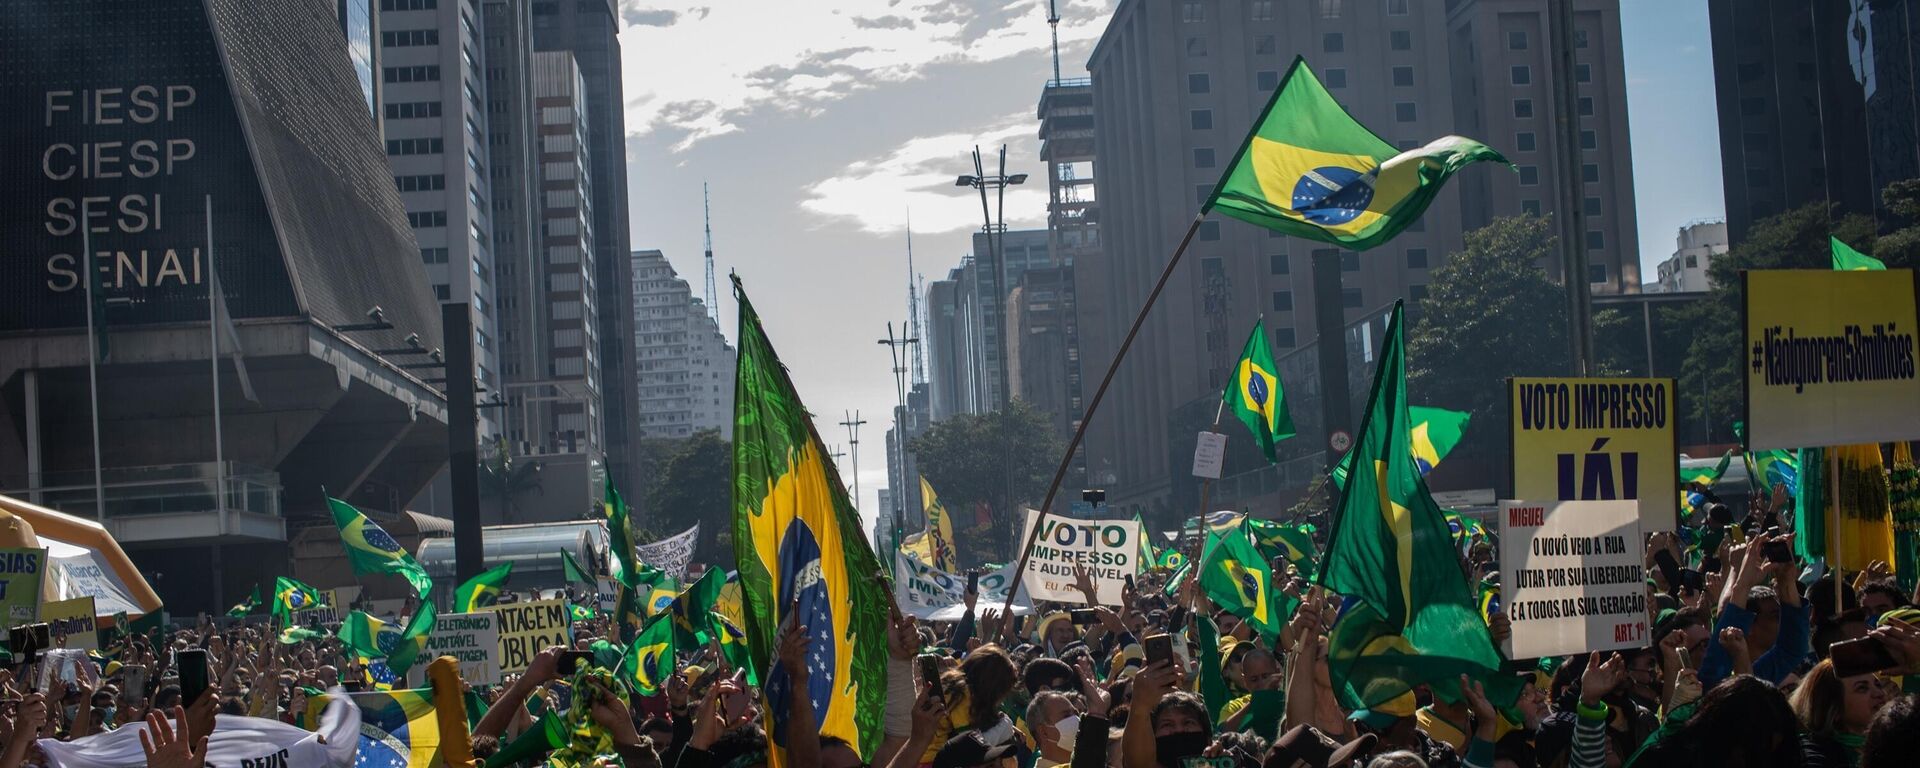 Protesto por voto impresso auditável, convocado por movimentos e parlamentares bolsonaristas , na avenida Paulista,  São Paulo, 1º de agosto de 2021 (foto de arquivo) - Sputnik Brasil, 1920, 26.04.2022